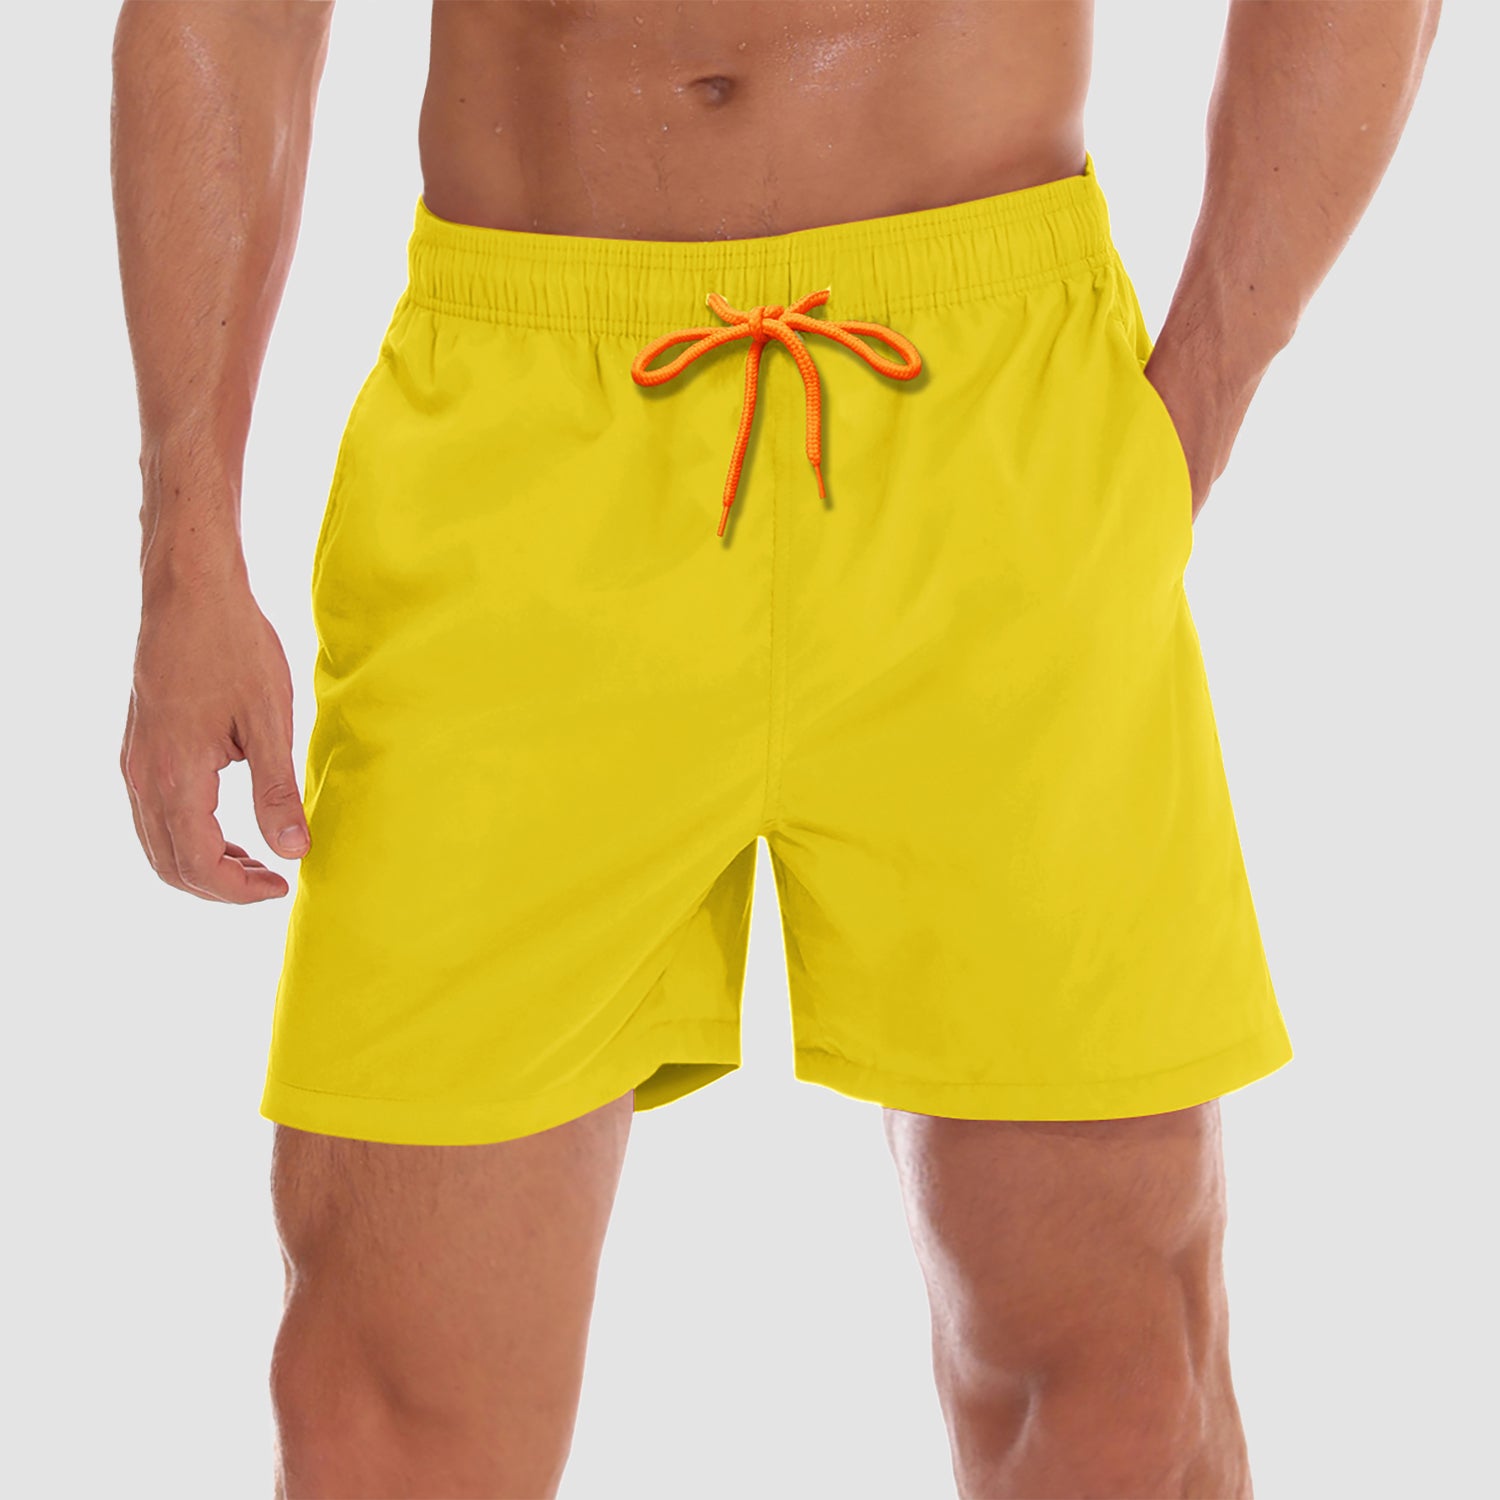 UNIQLO mens 3XL yellow mesh lined swim shorts trunks drawstring